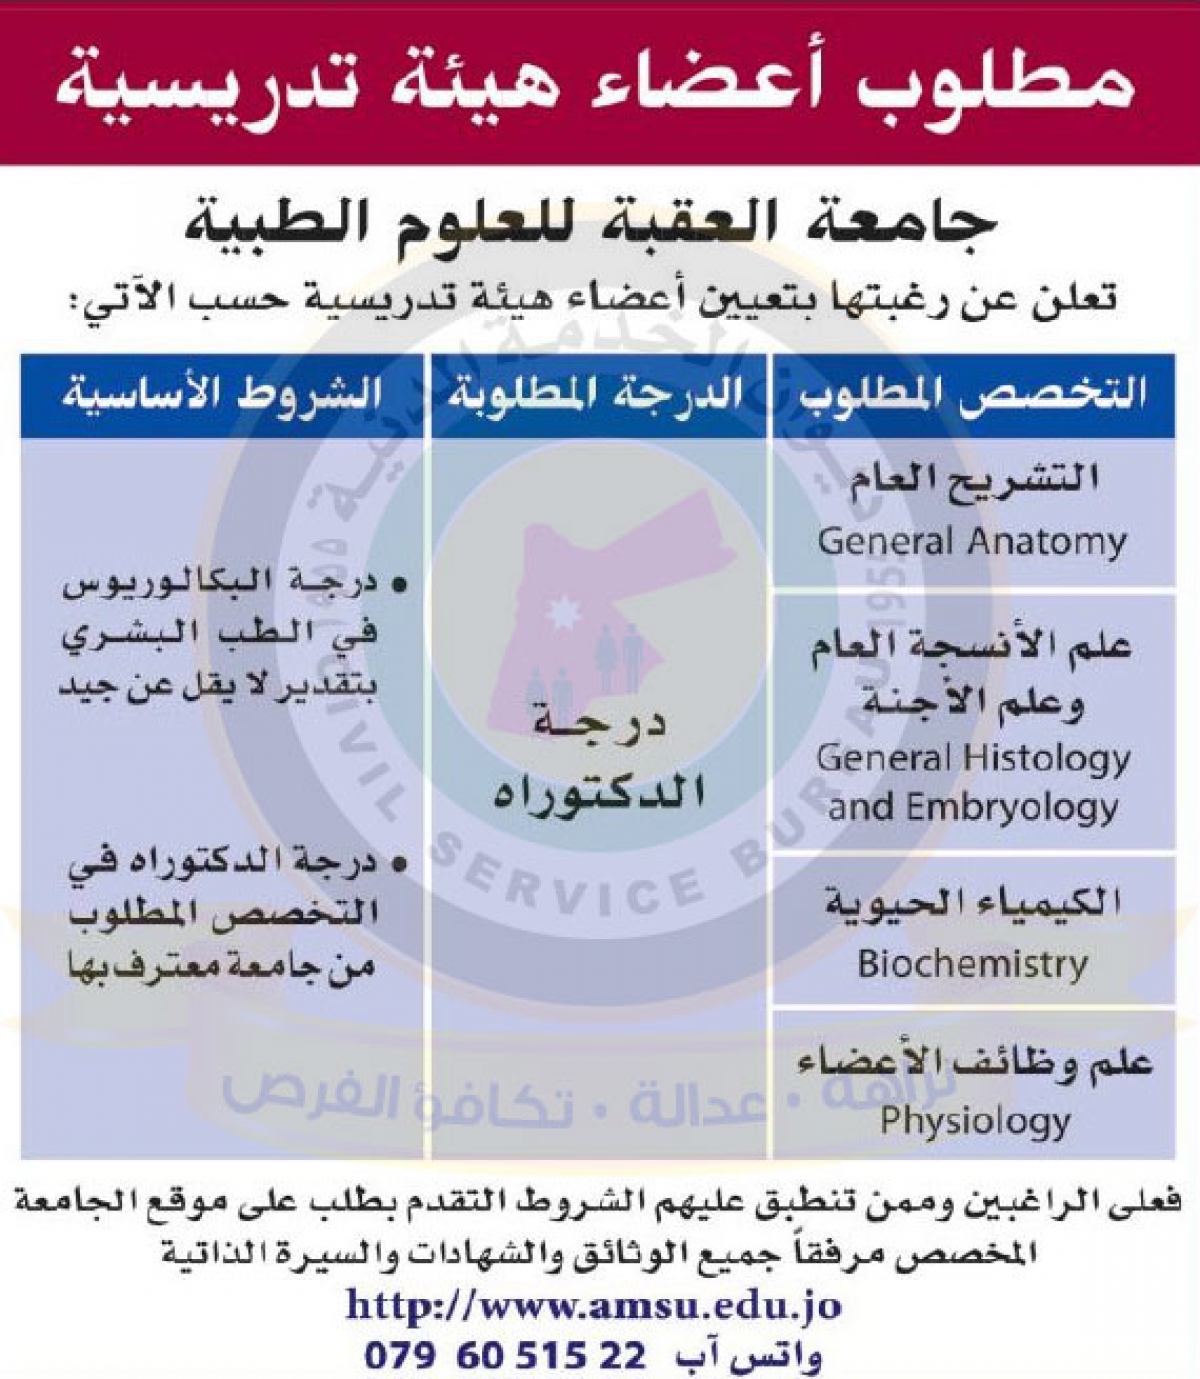 اعلان عن الحاجة لتعيين أعضاء هيئة تدريسية صادر عن جامعة العقبة للعلوم الطبية